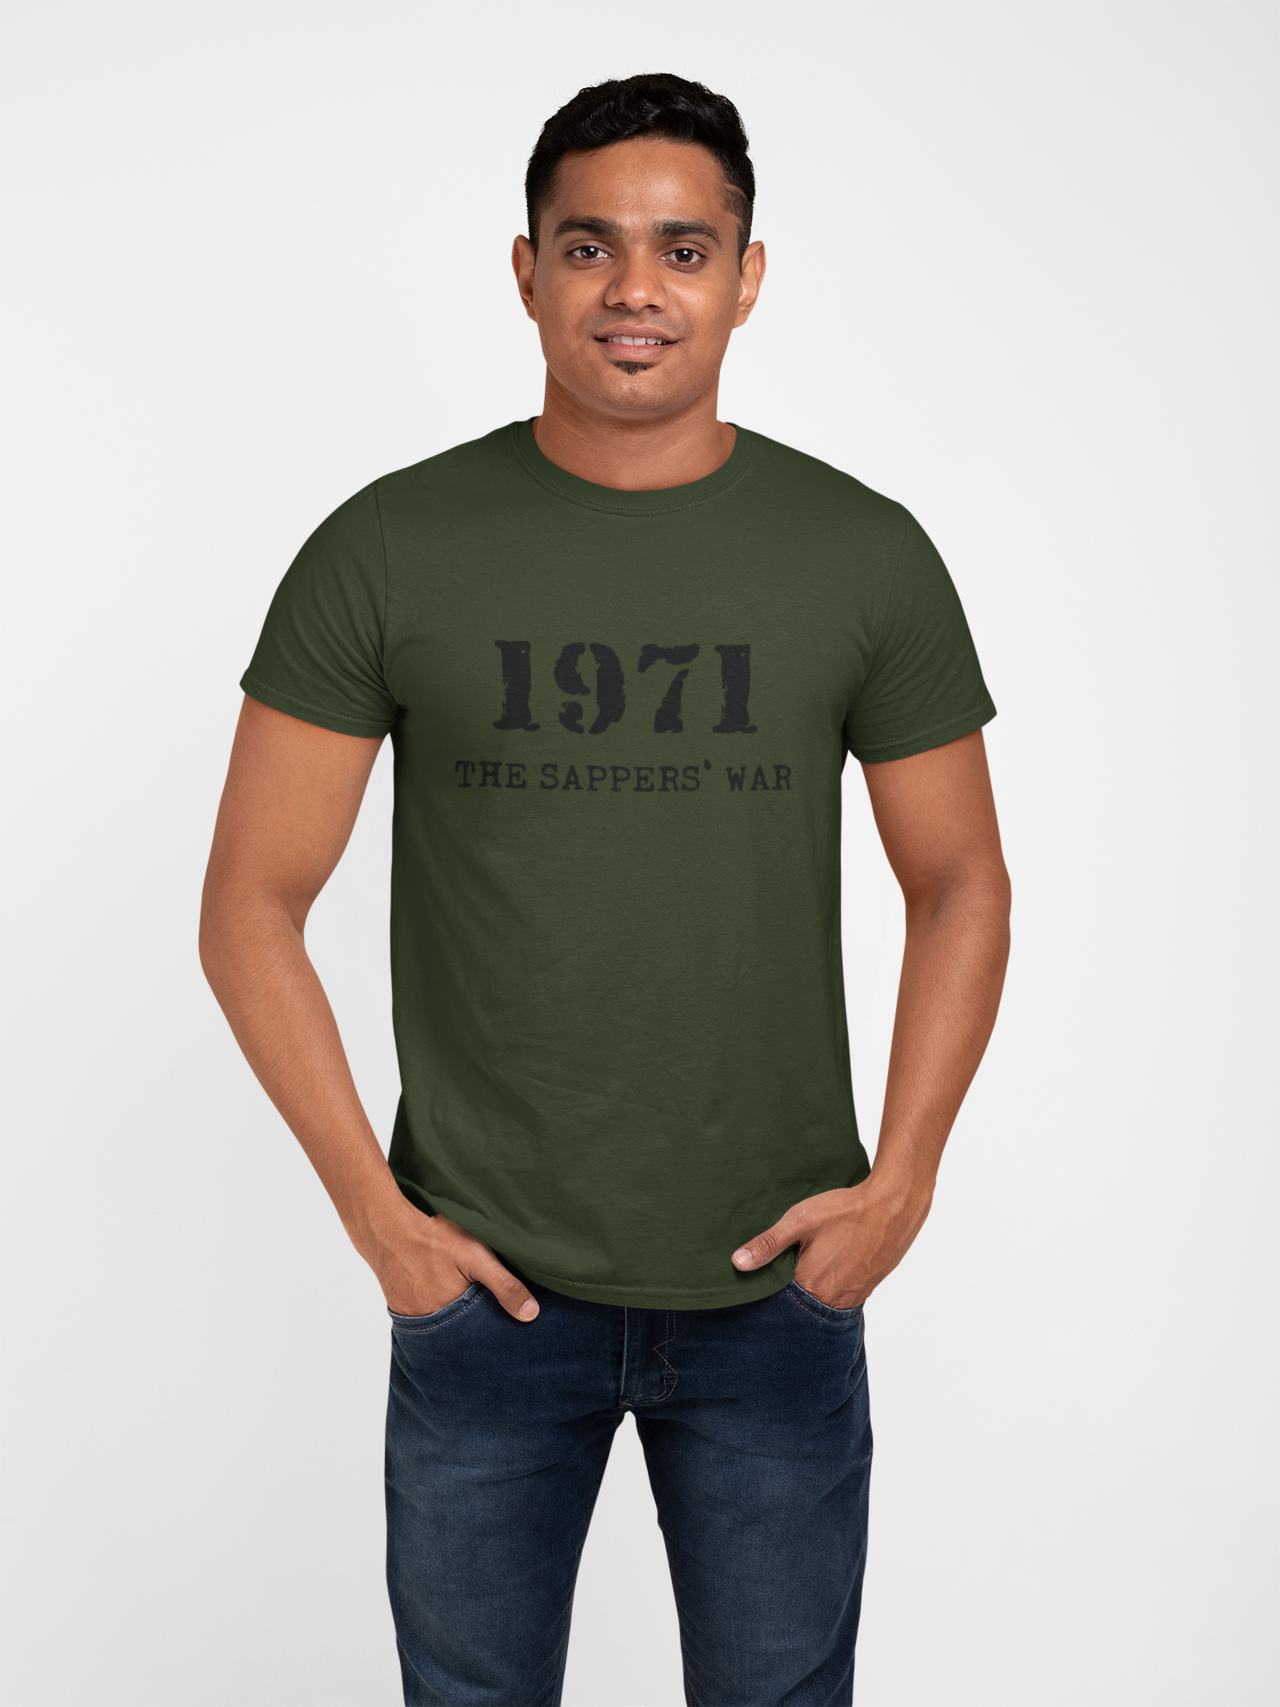 Sapper T-shirt - 1971 Sappers' War (Men)